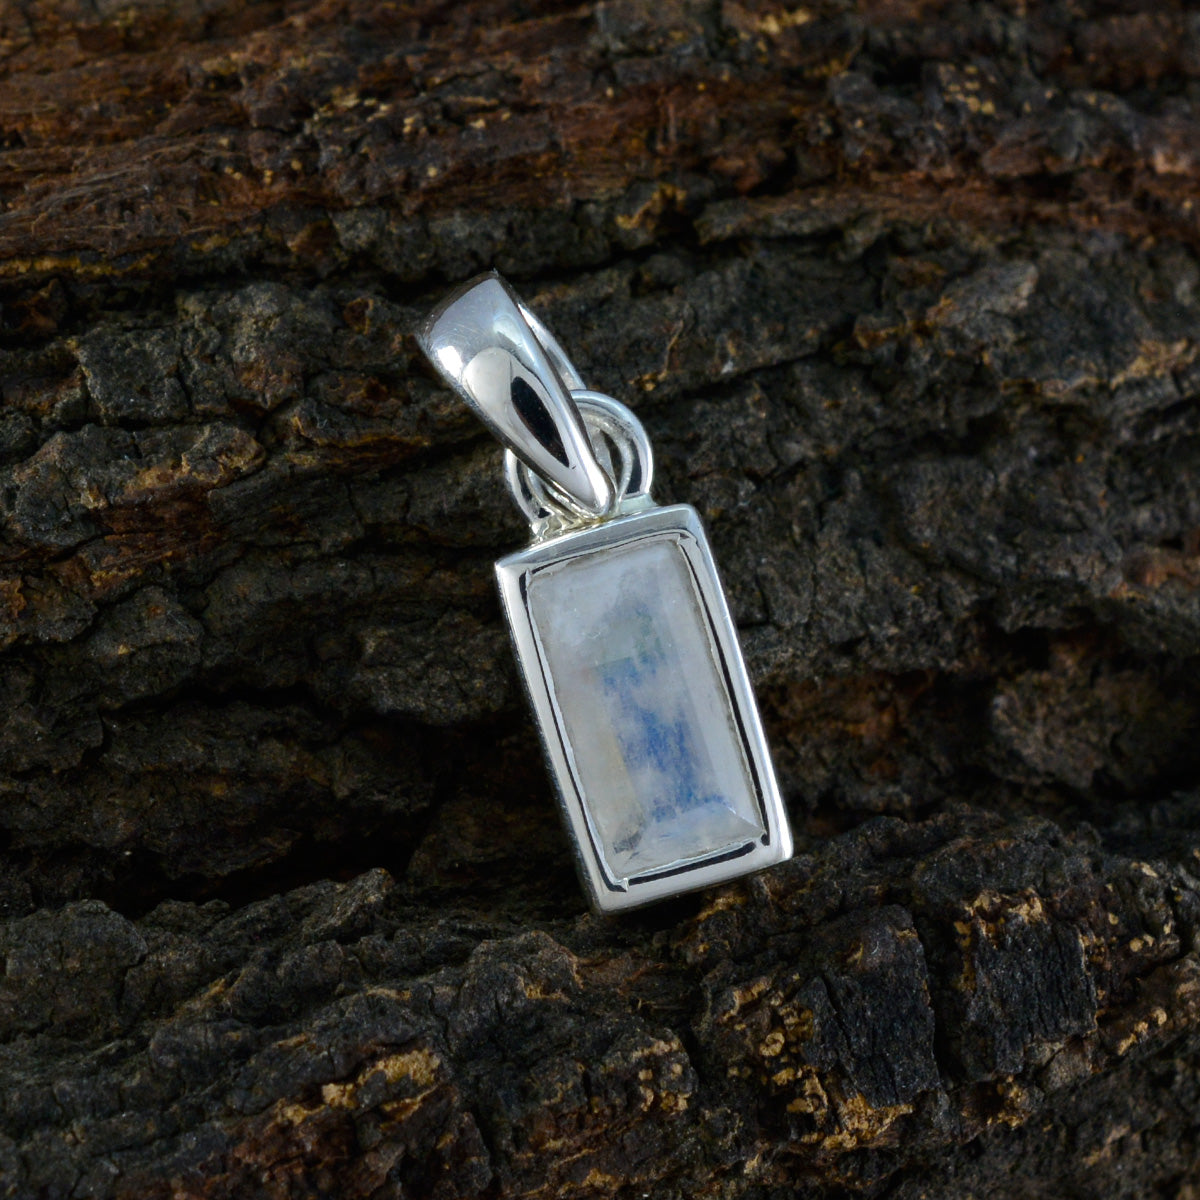 riyo красивый драгоценный камень багет ограненный белый радужный лунный камень 971 проба серебро кулон подарок на день учителя